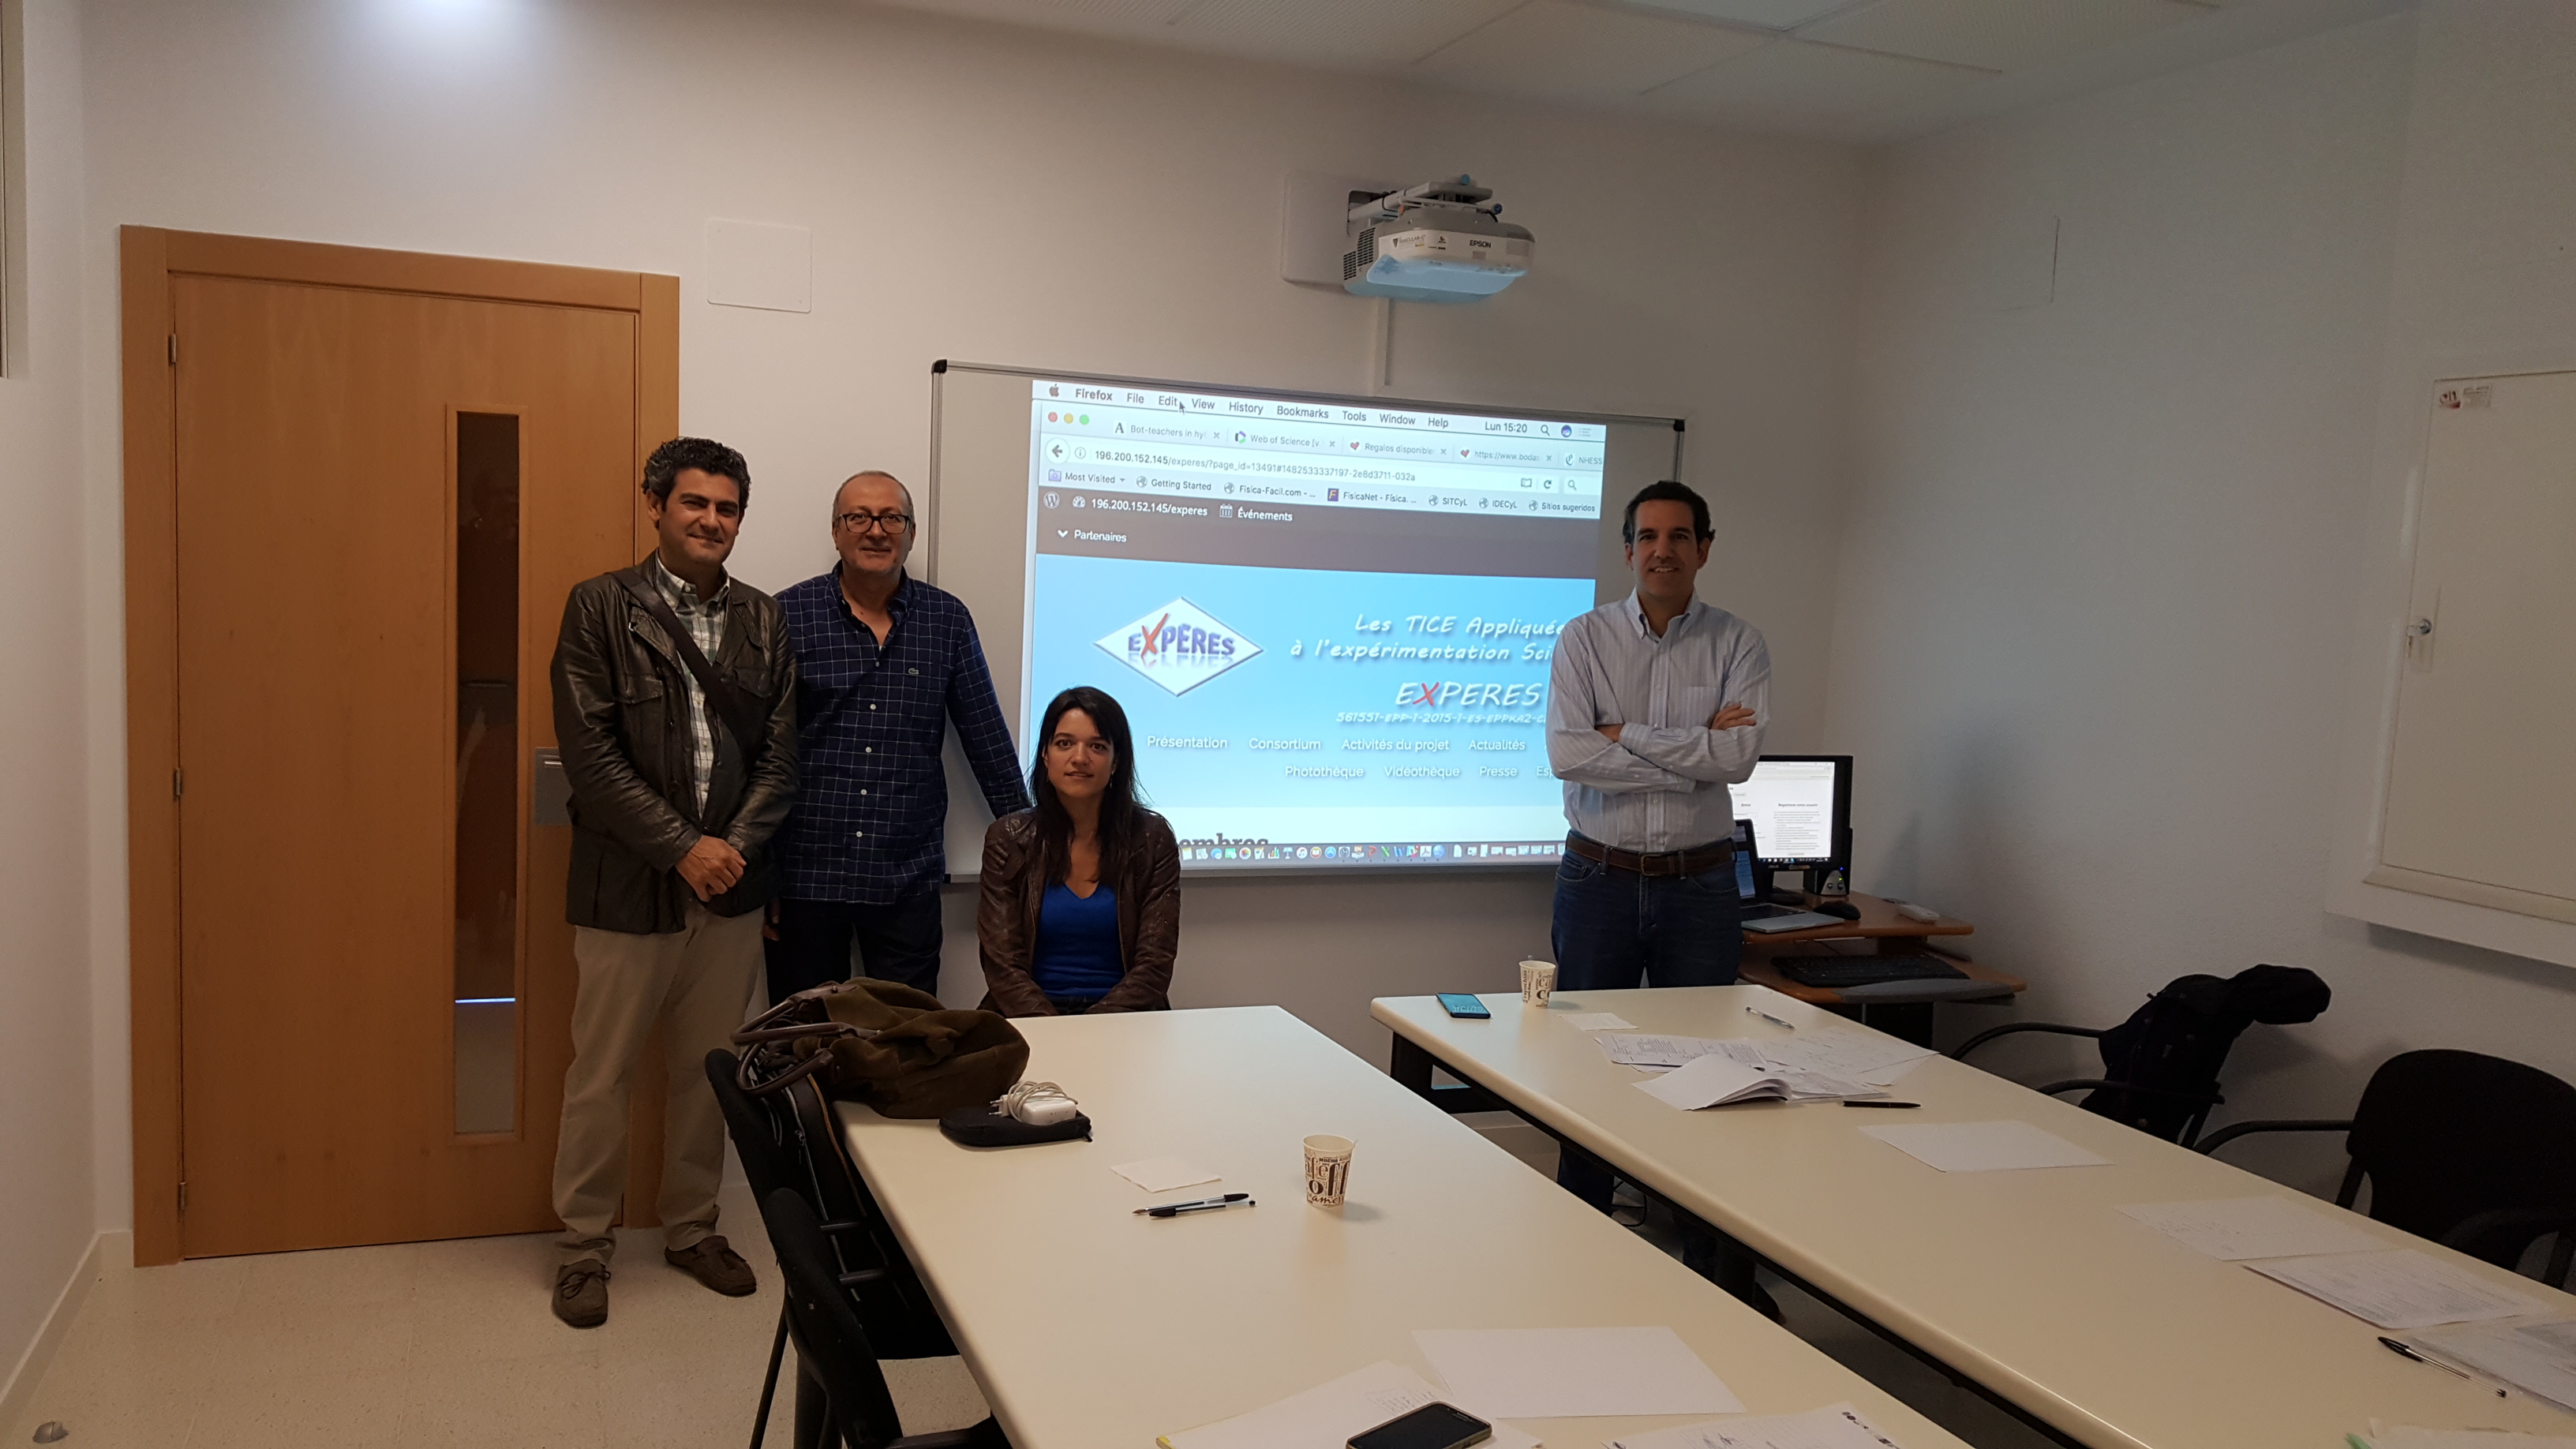 Reunión en León para la Formación en la plataforma moodle del Proyecto Experes